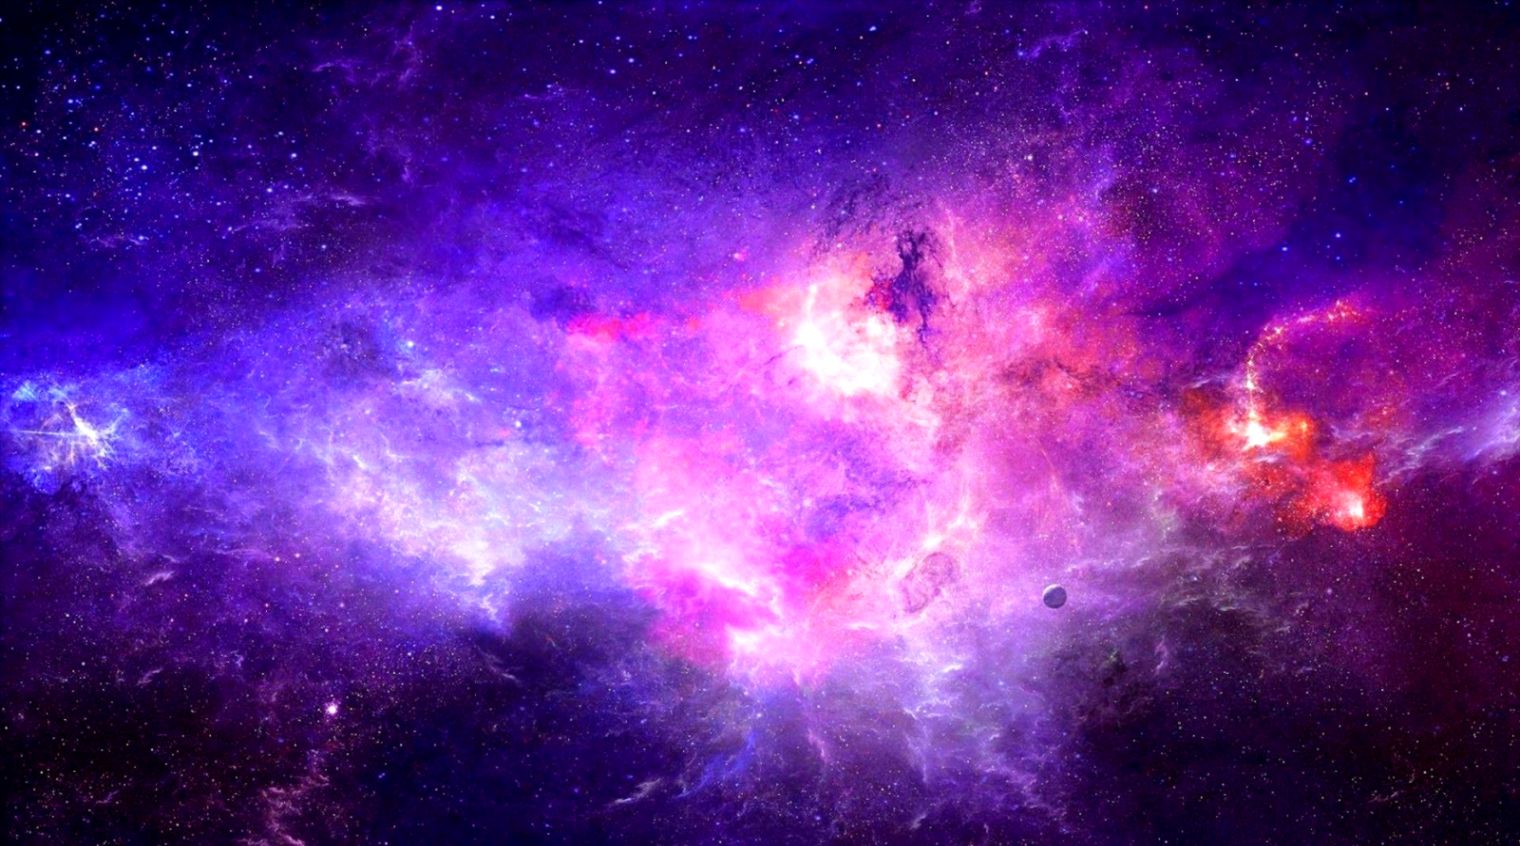 galaxie live wallpaper hd,nebel,violett,lila,himmel,weltraum